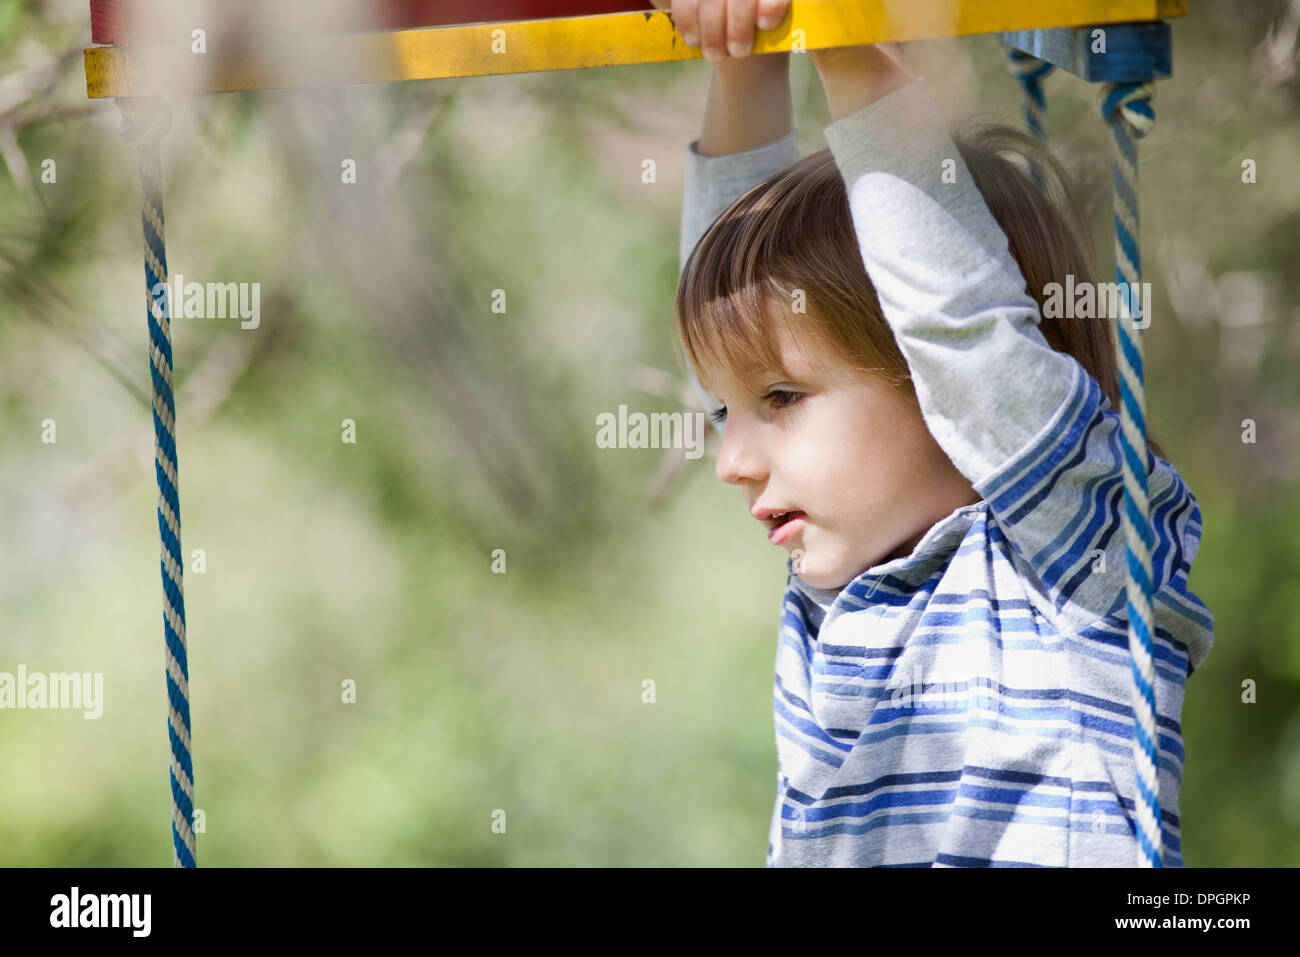 Junge spielt auf Klettergerüst Stockfoto